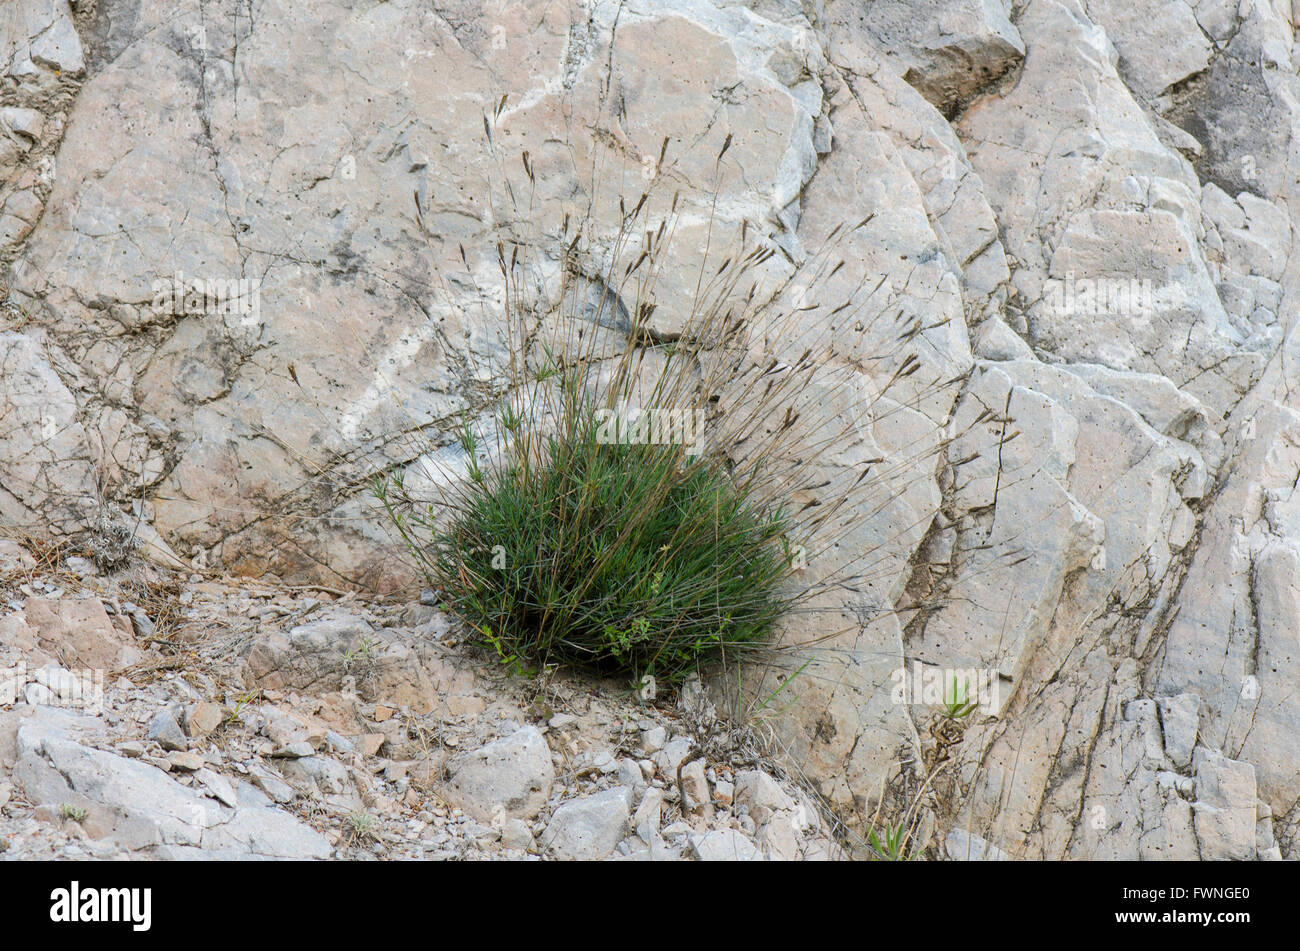 Tussock Gras wachsen aus Kalkstein Gesteinsoberfläche, Spanien. Stockfoto